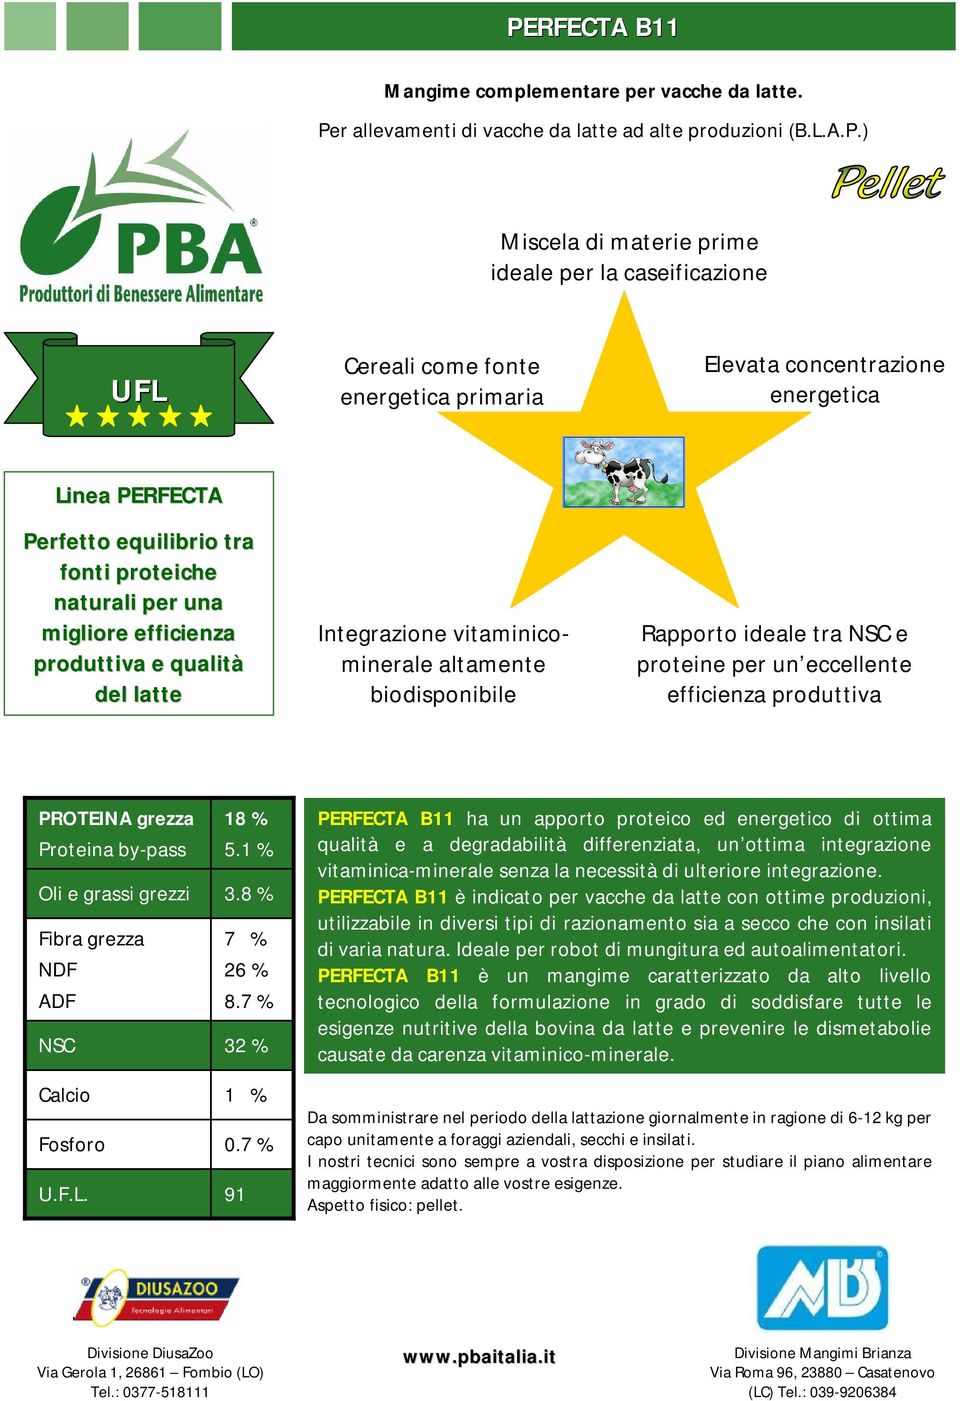 vitaminicominerale altamente biodisponibile Rapporto ideale tra e proteine per un eccellente efficienza produttiva 18 % 5.1 % 3.8 % 7 % 26 % 8.7 % 32 % 1 % 0.